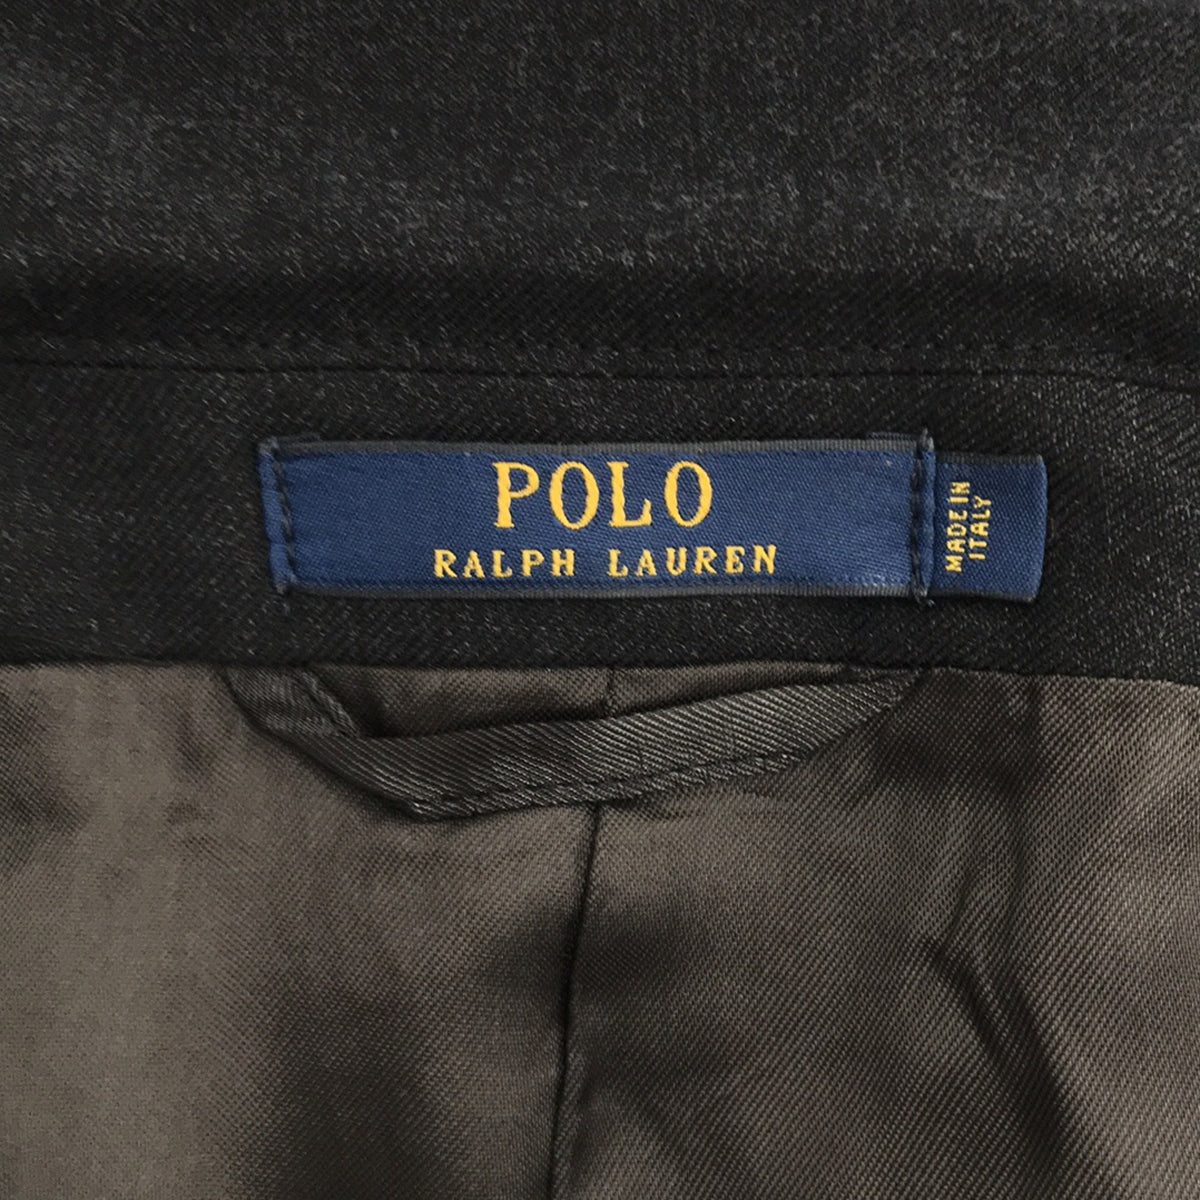 POLO RALPH LAUREN / ポロラルフローレン | イタリア製 ウール セットアップ スーツ 2B テーラードジャケット スラックス | 34/S | メンズ